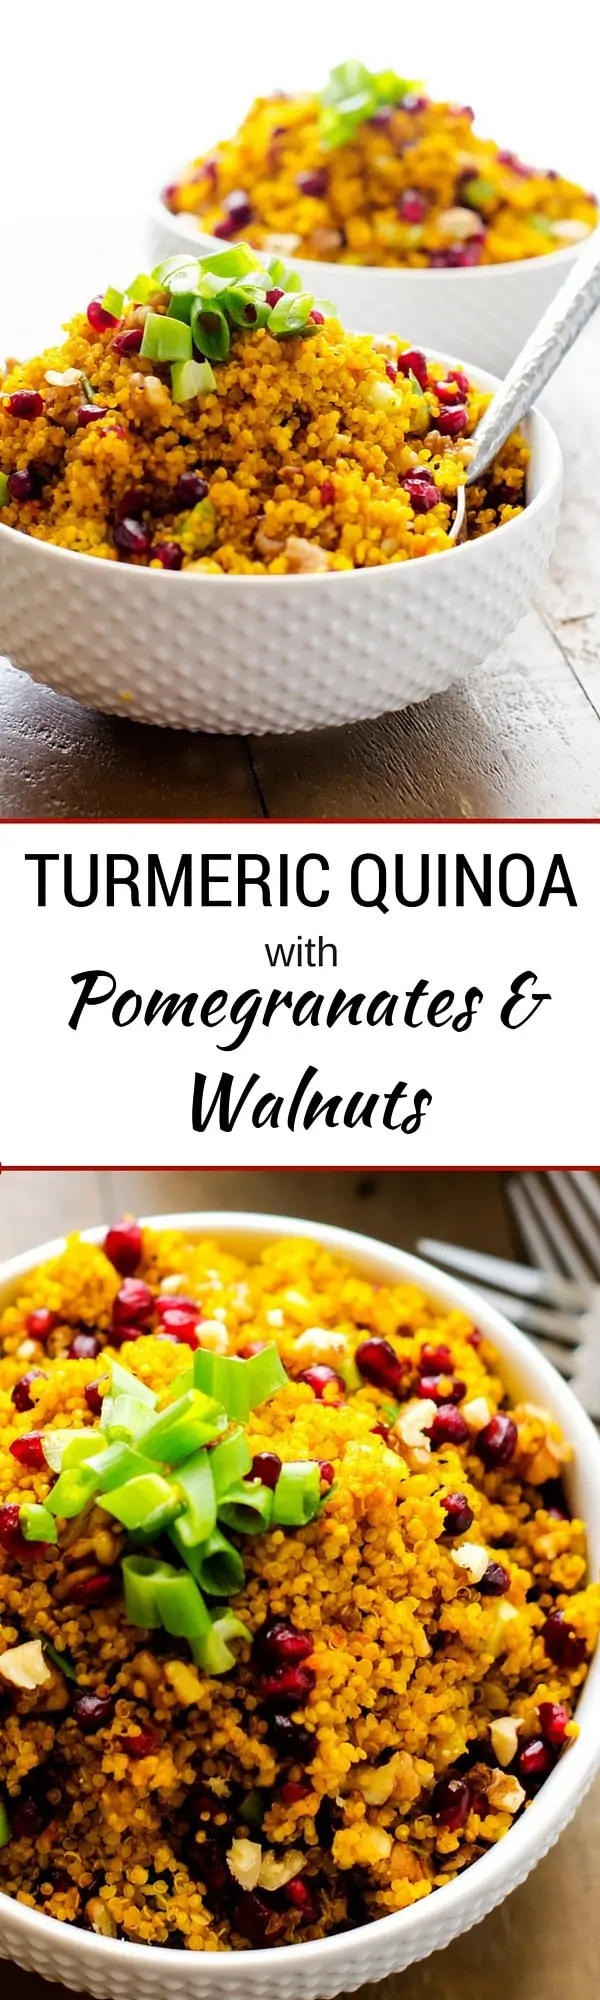 Turmeric Quinoa with Pomegranates and Walnuts